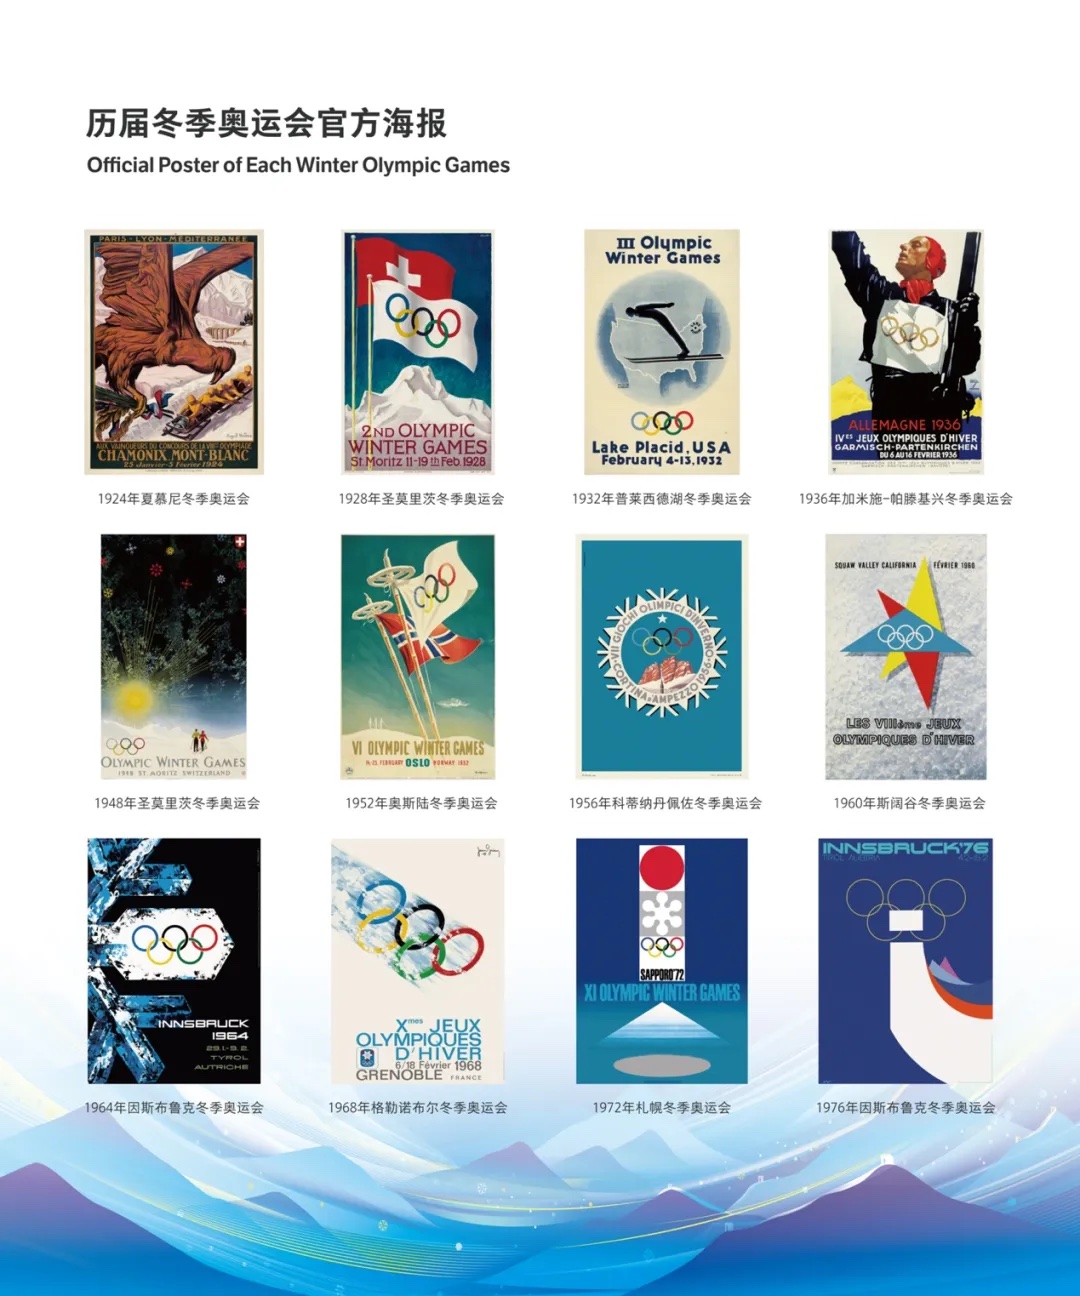 北京2022冬奥会和冬残奥会宣传海报设计征集评审举办